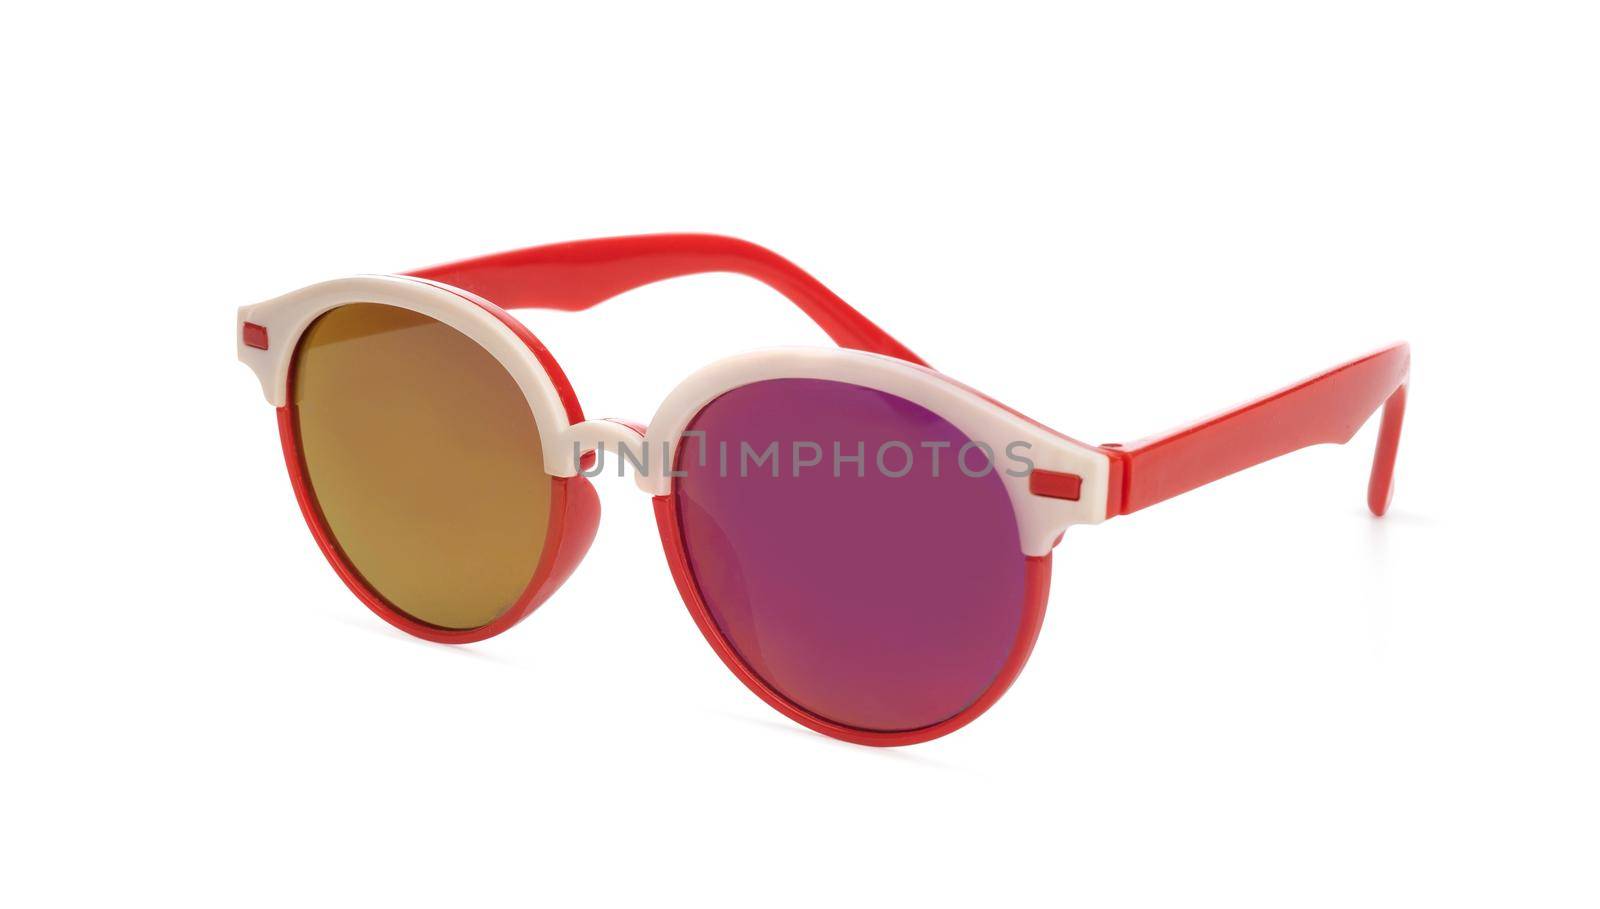 Sunglasses in red frame by GekaSkr